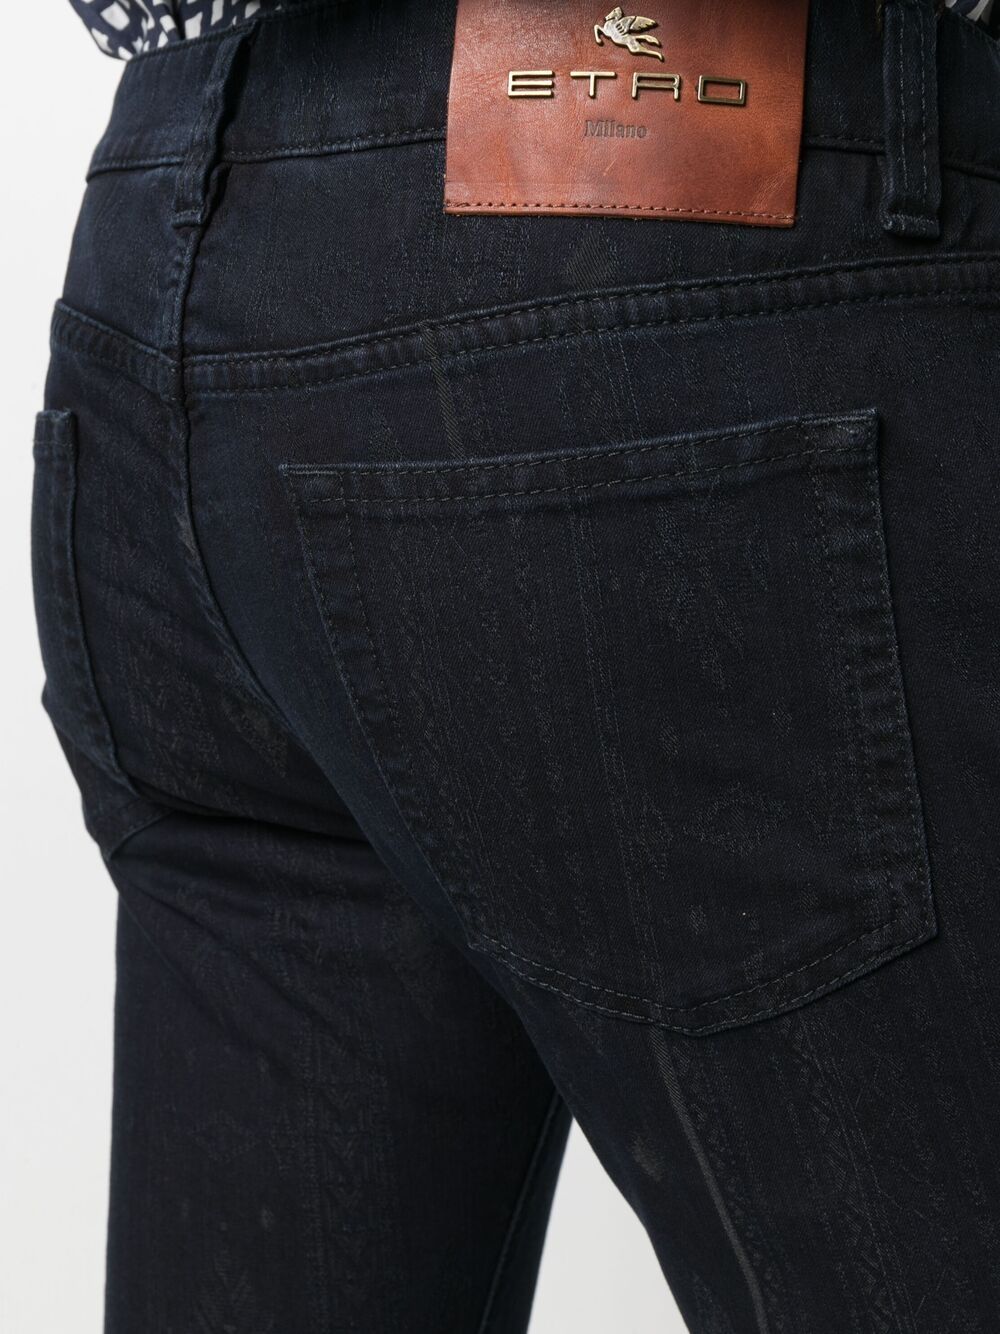 фото Etro прямые джинсы средней посадки